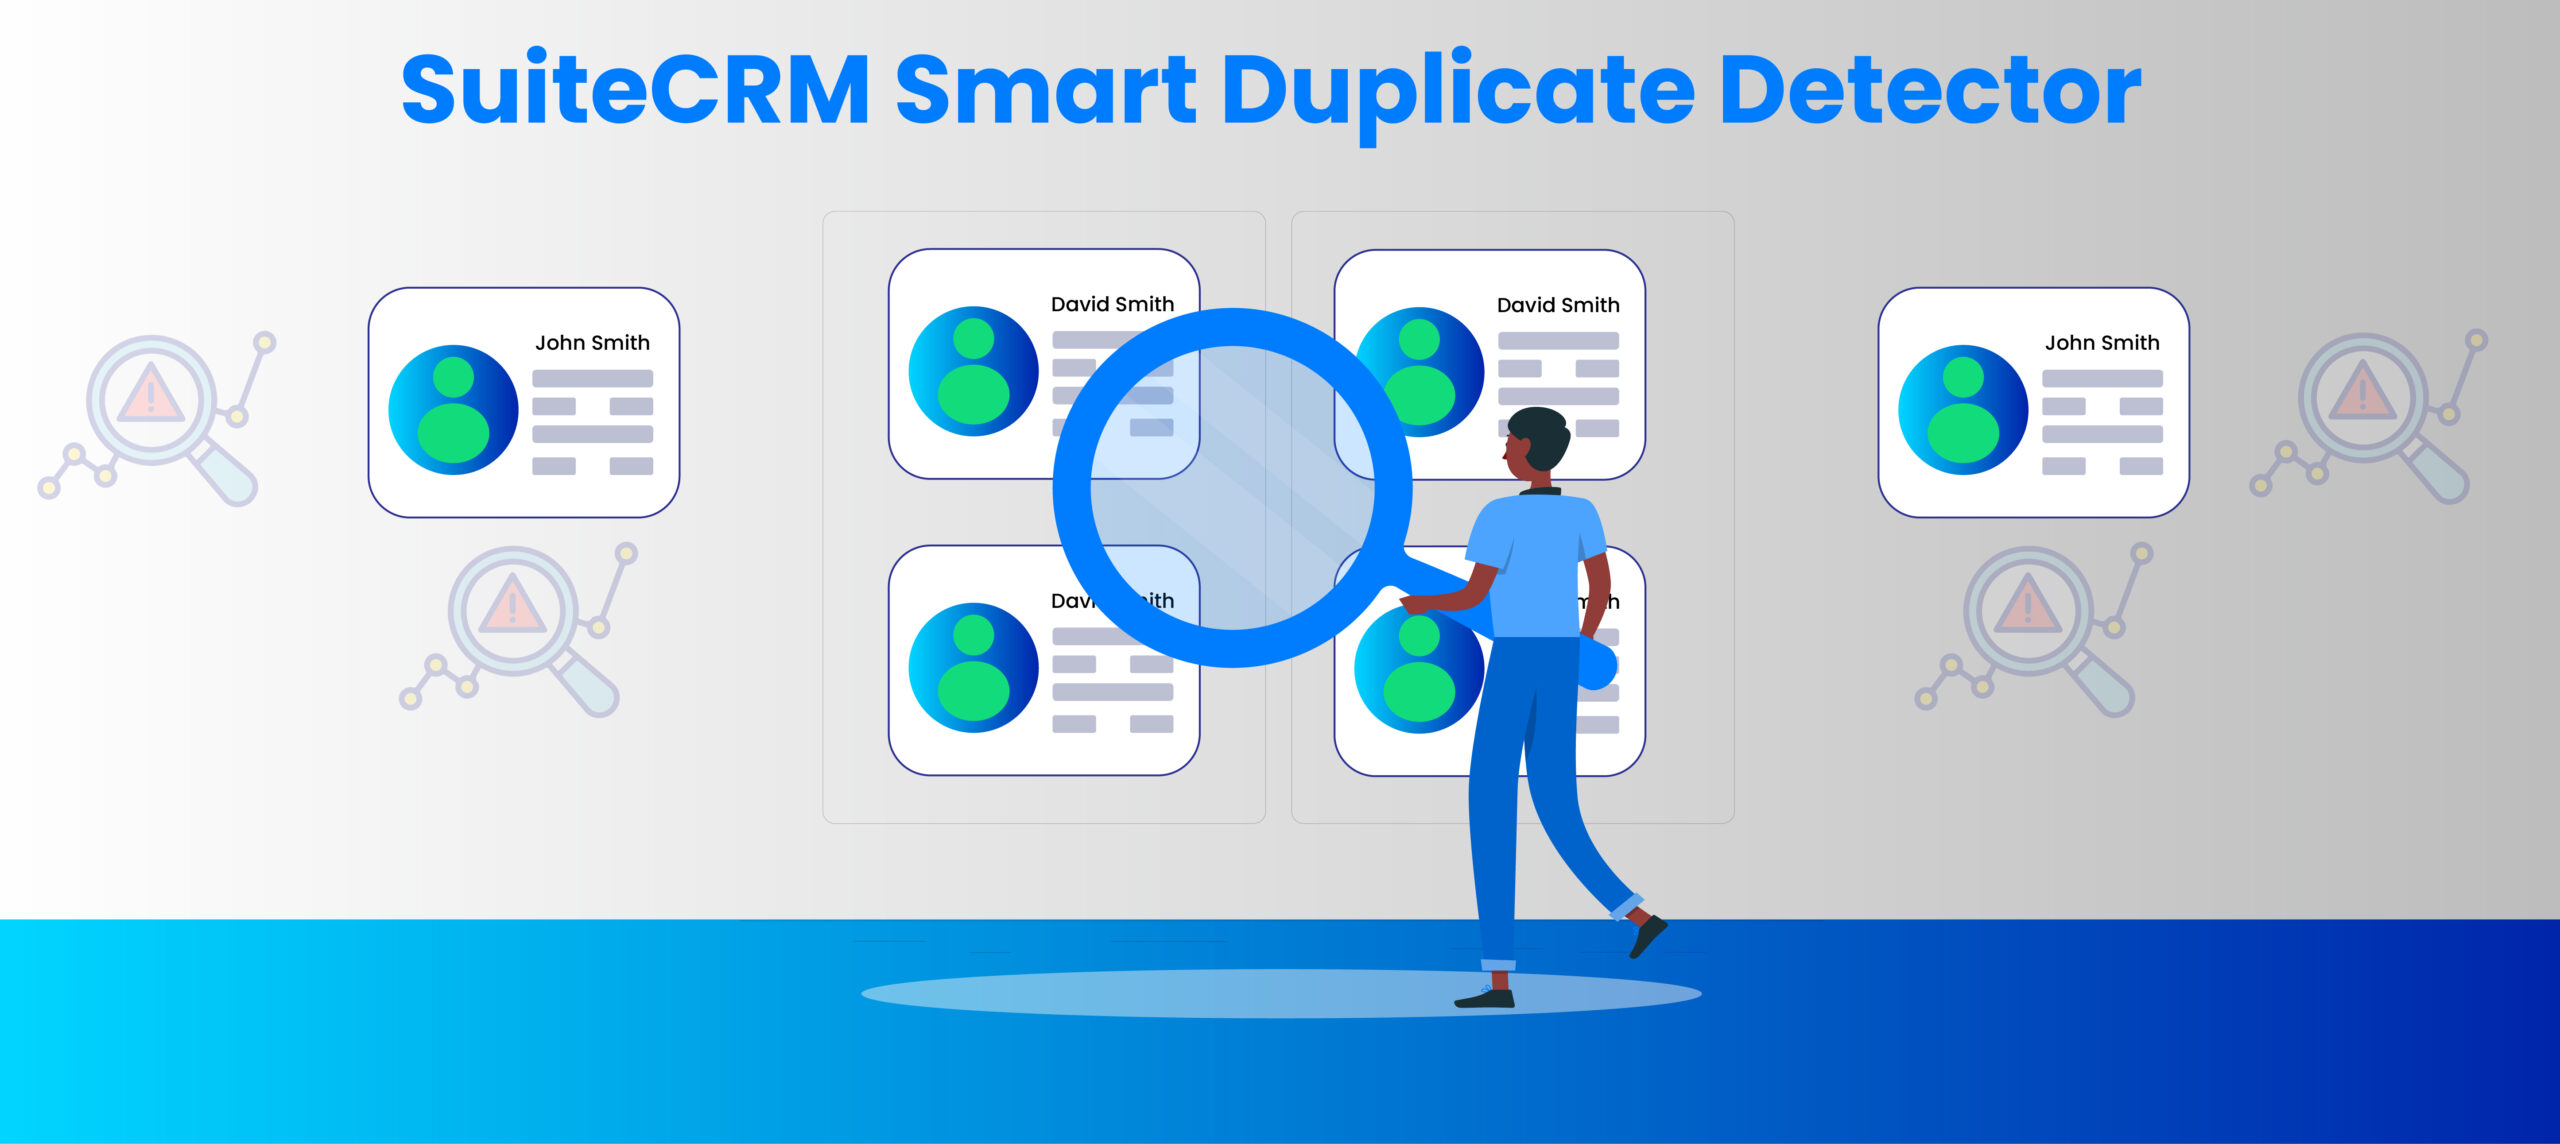 SuiteCRM Smart Duplicate Detector